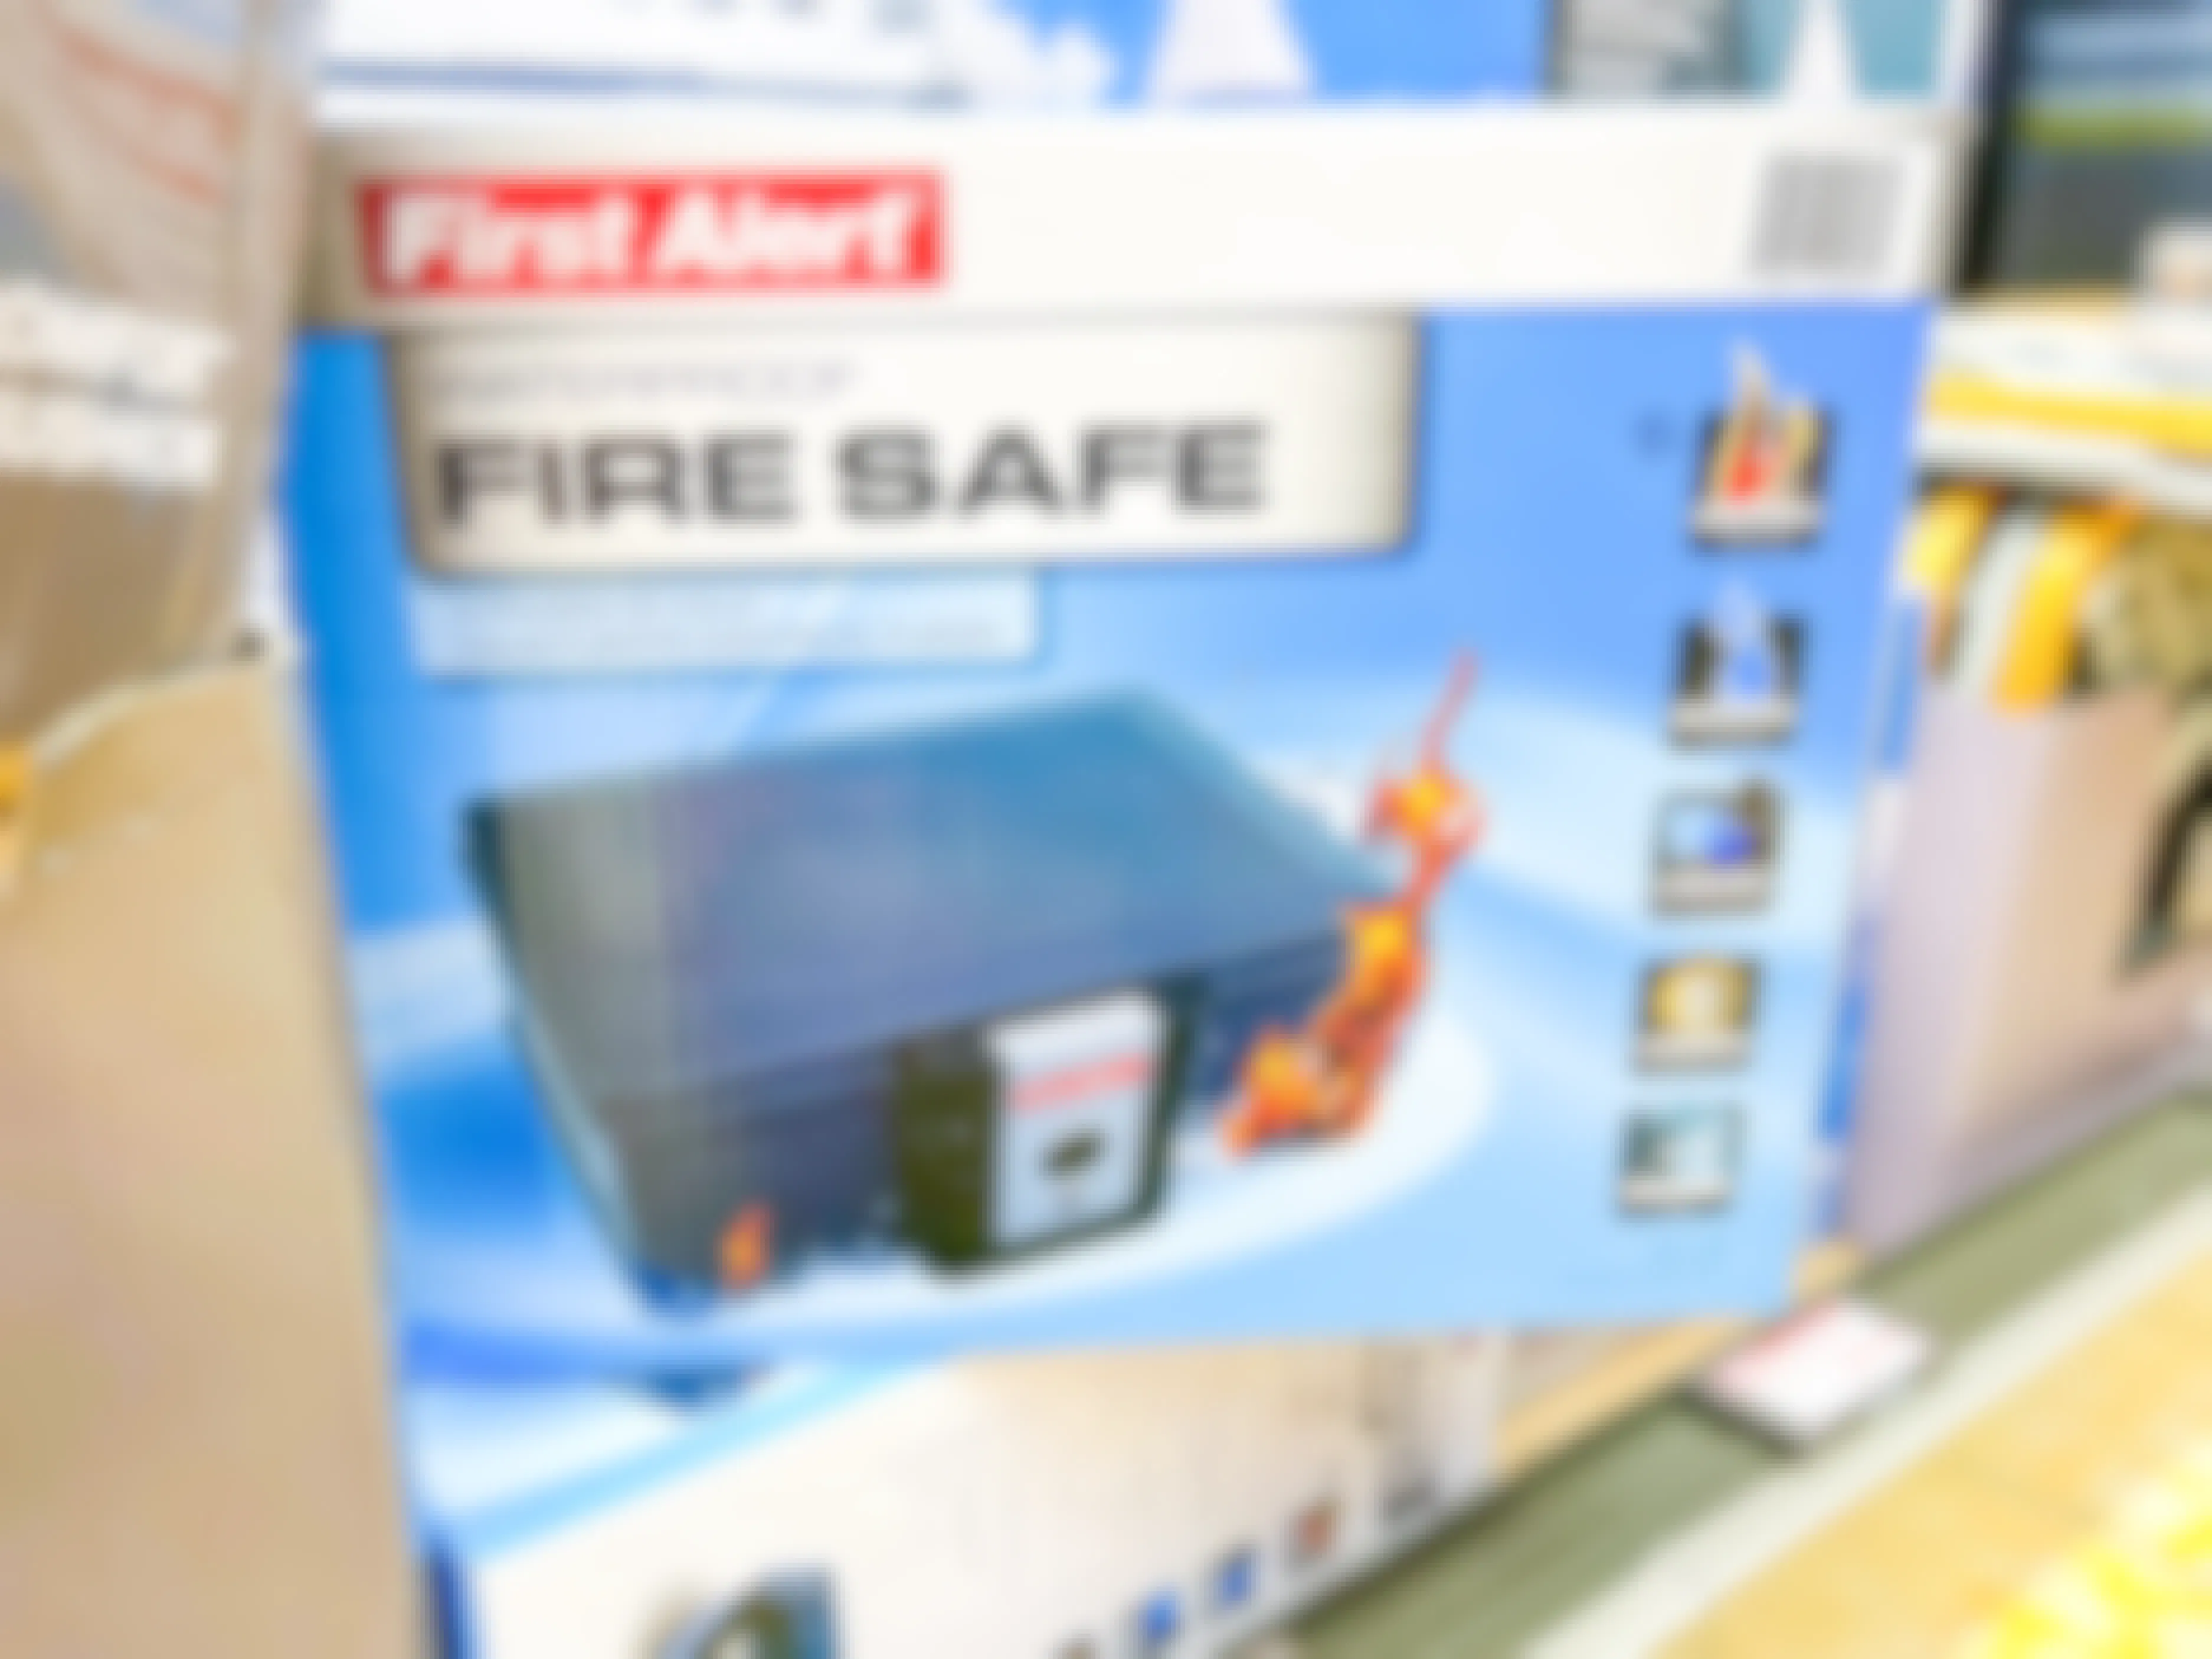 Fire Safe